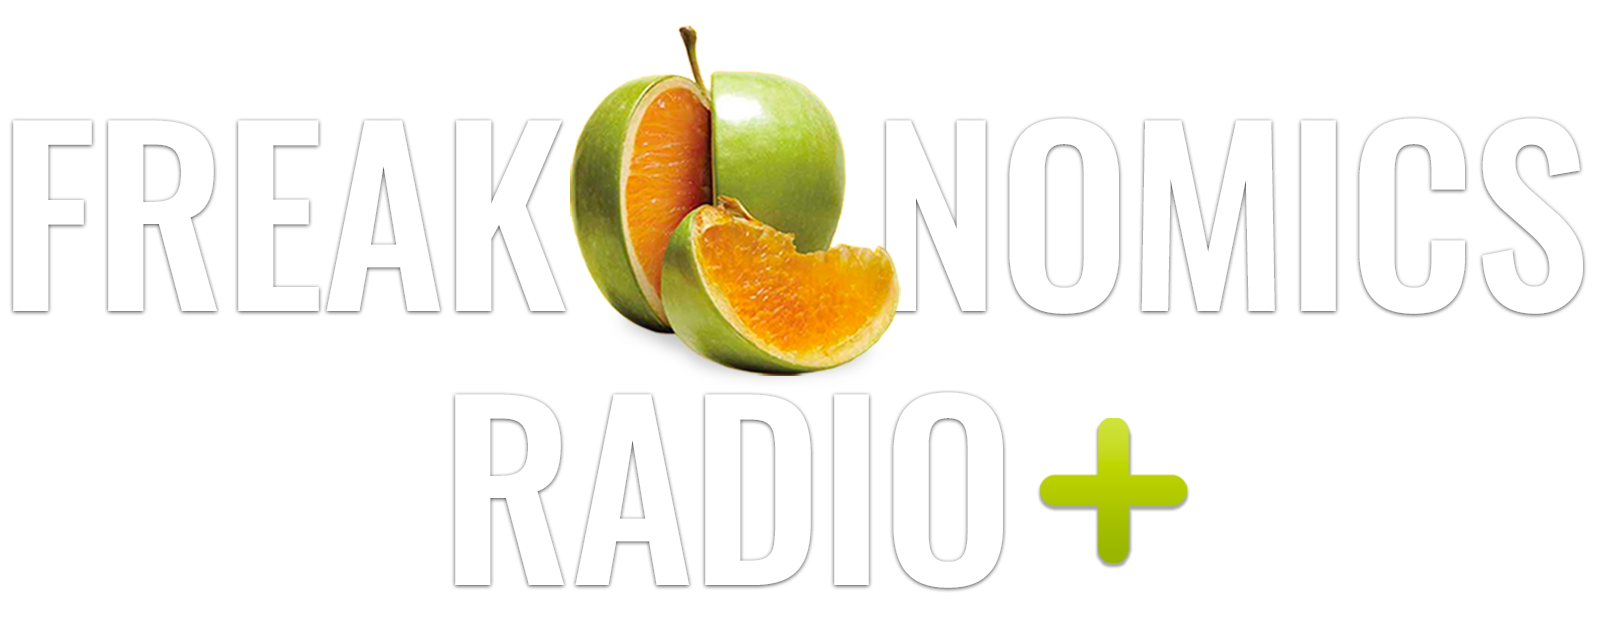 Freakonomics Radio Plus